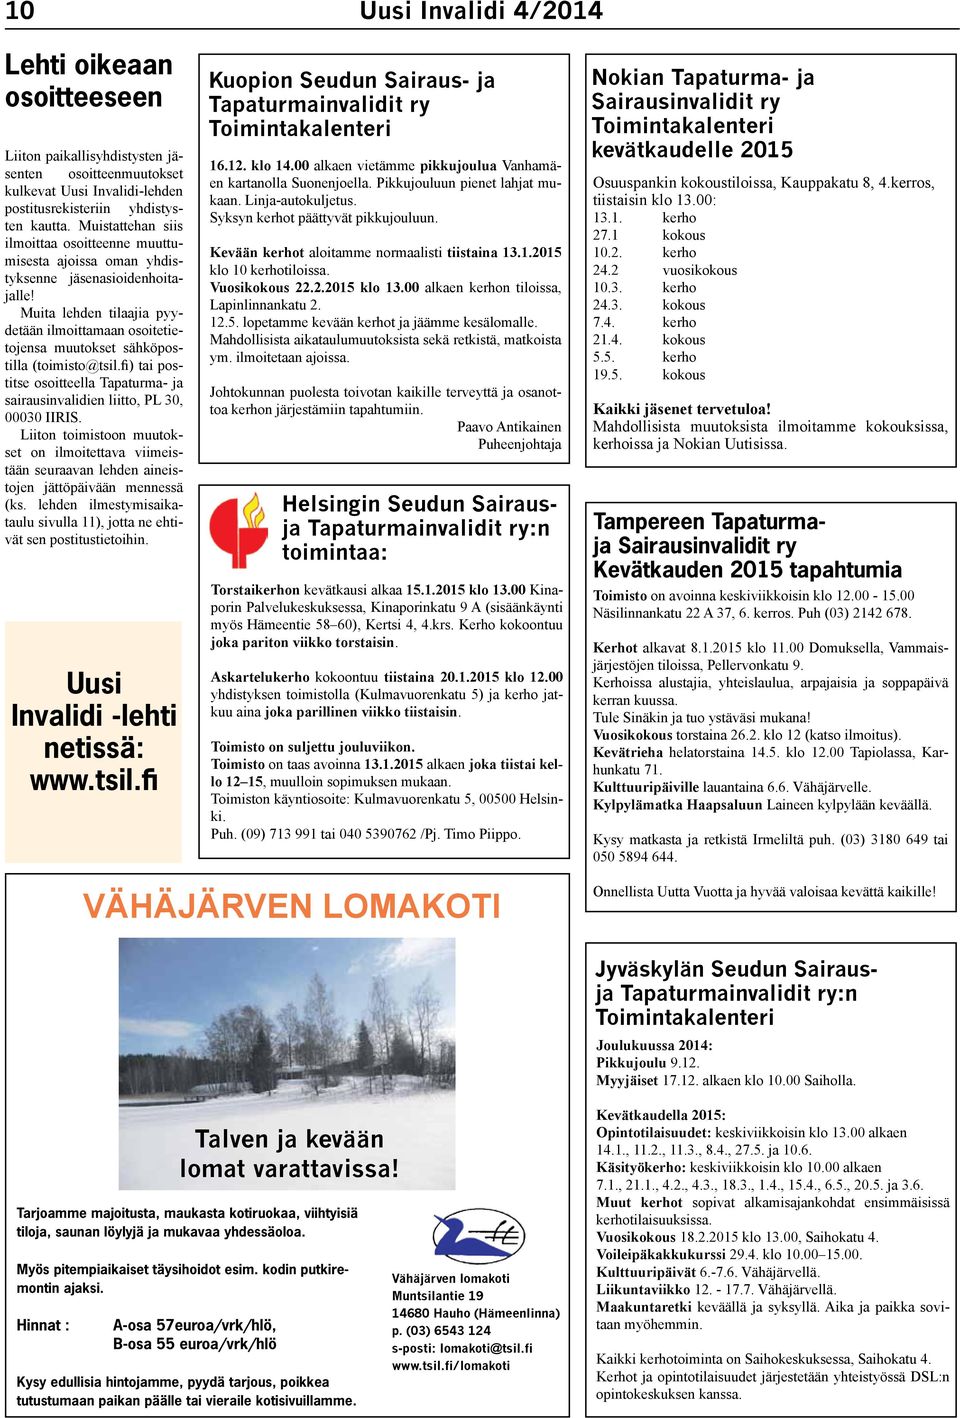 Muita lehden tilaajia pyydetään ilmoittamaan osoitetietojensa muutokset sähköpostilla (toimisto@tsil.fi) tai postitse osoitteella sairausinvalidien liitto, PL 30, 00030 IIRIS.